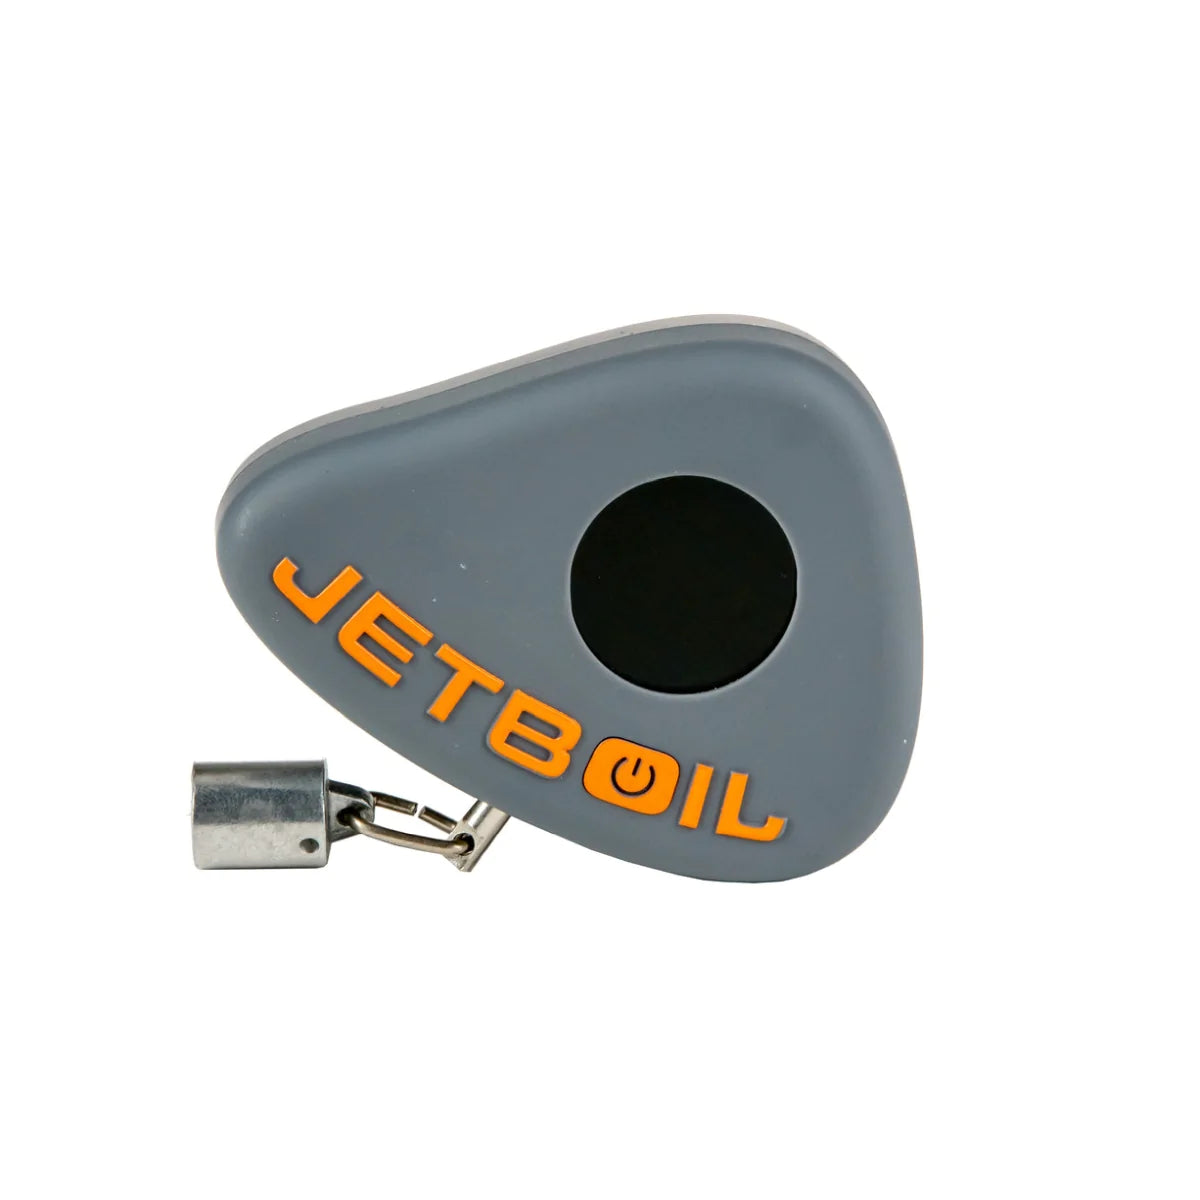 Jetboil JetGauge Fuel Level Measuring Tool